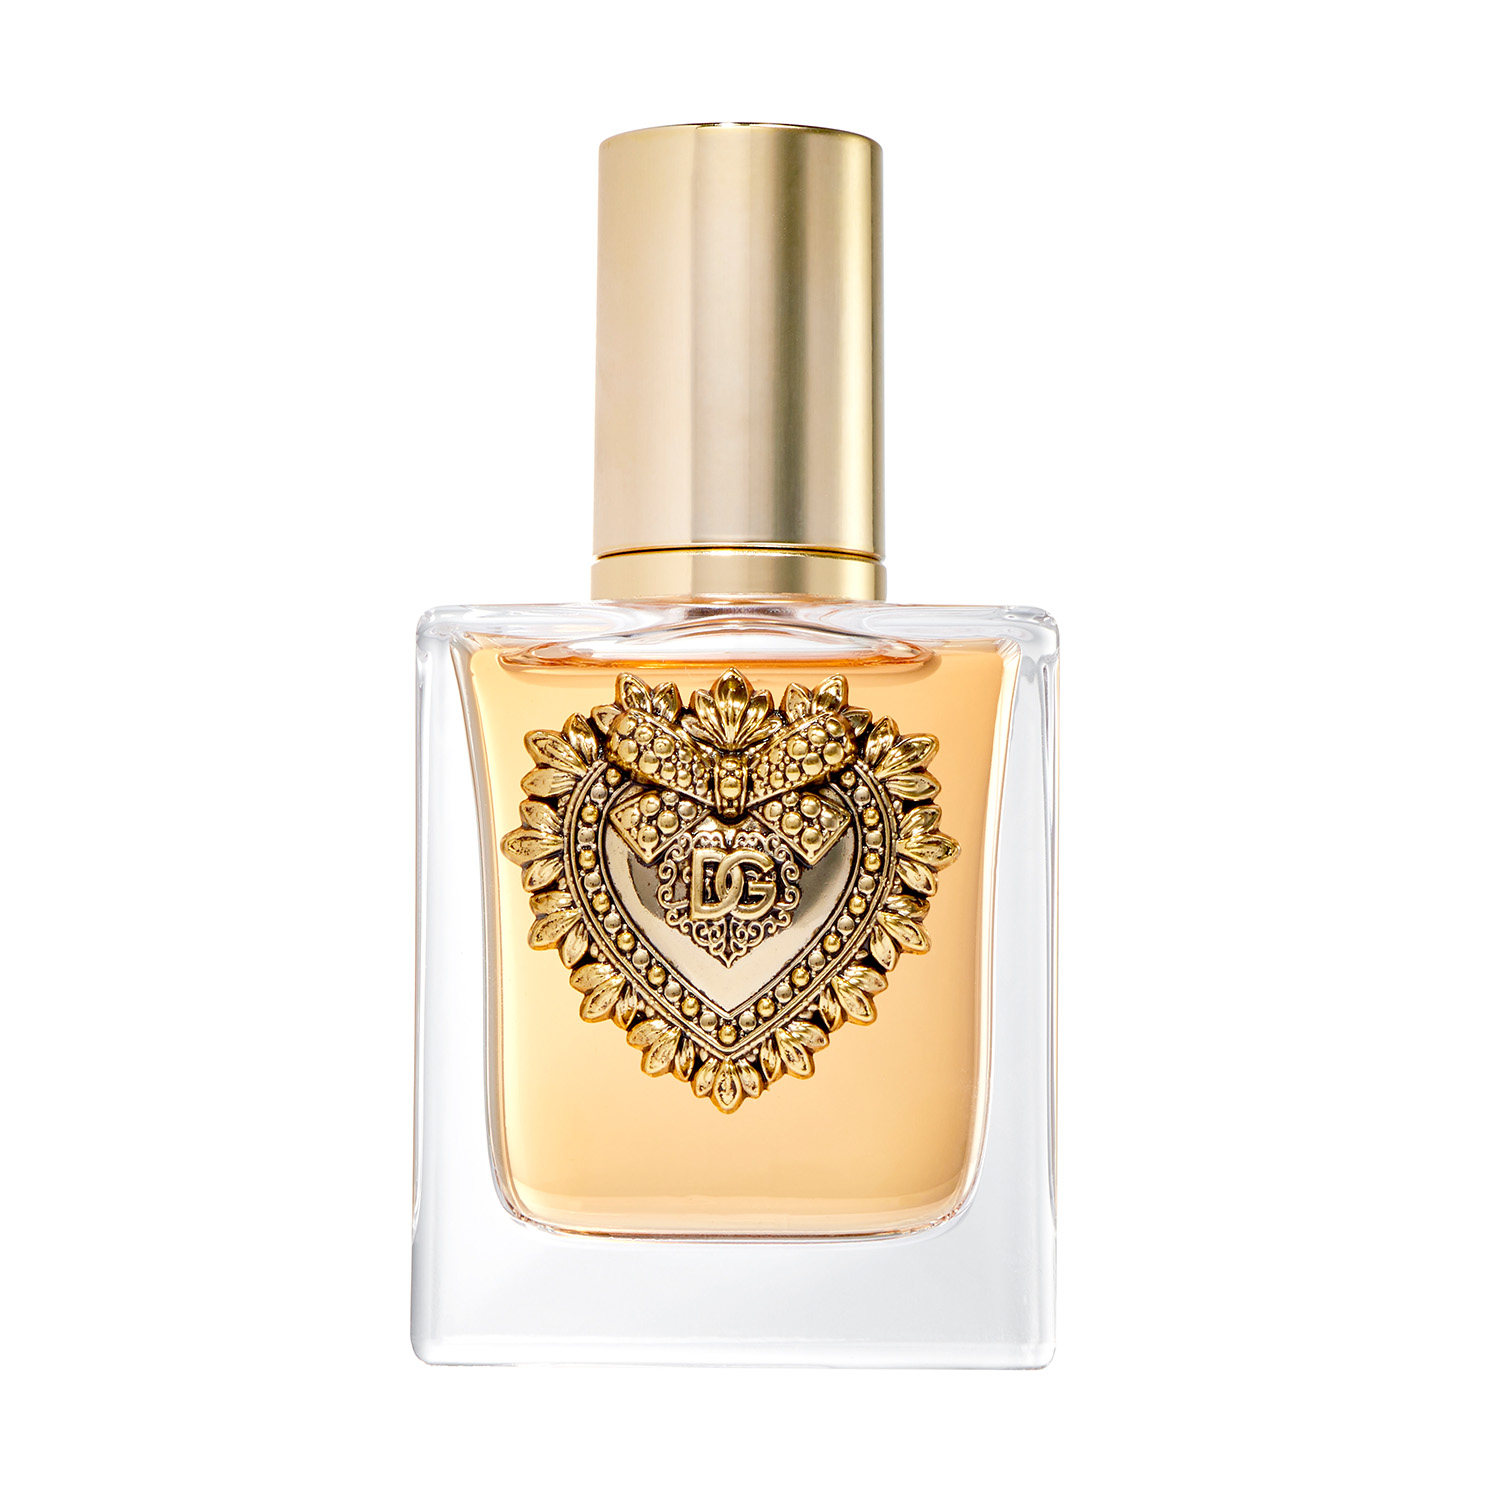 Dolce & Gabbana Devotion Eau de Parfum, Perfume for Women, 1.7 oz - image 1 of 5